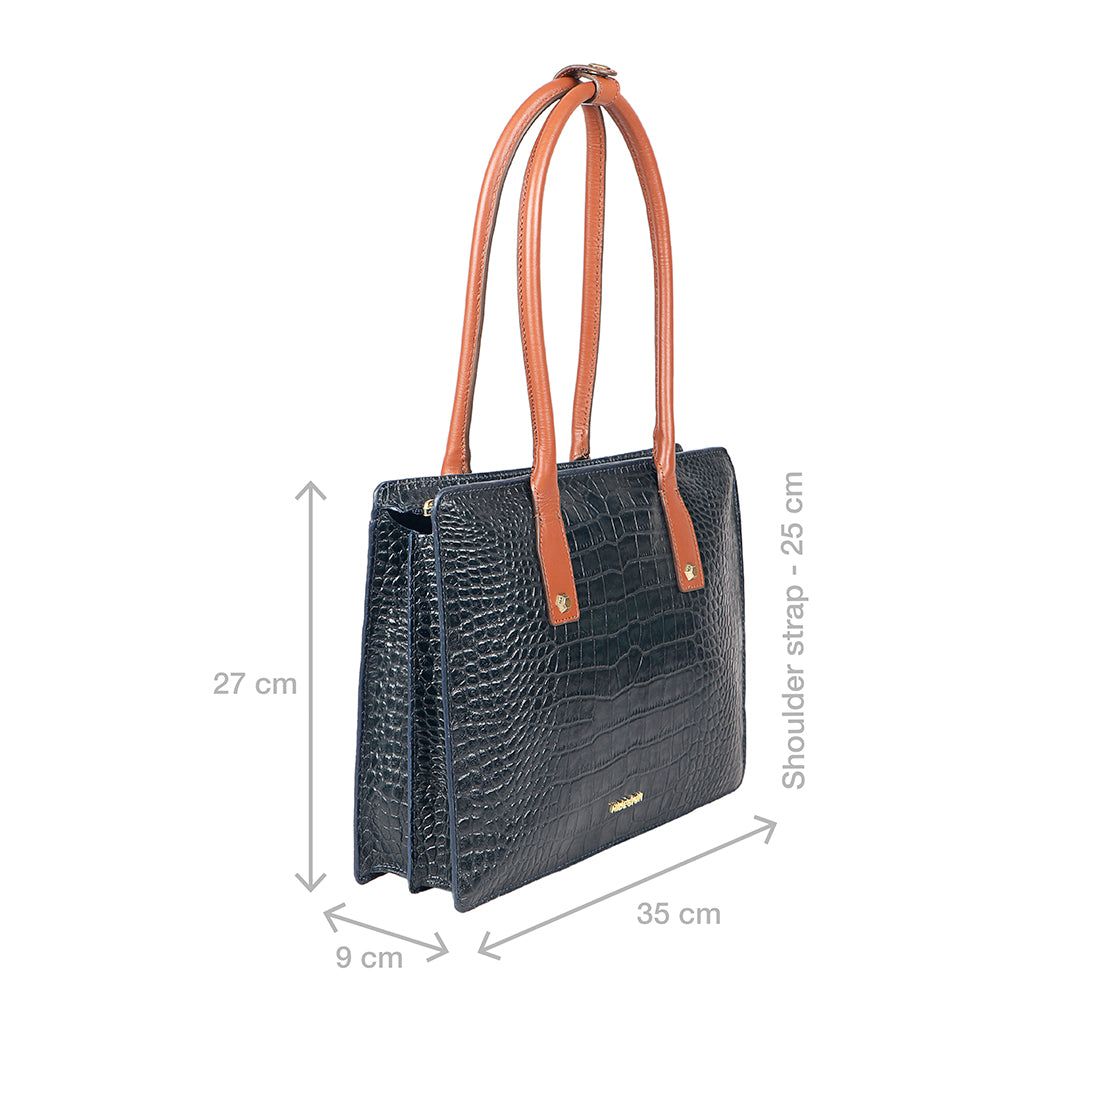 Buy Orange Charleston 03 Shoulder Bag Online - Hidesign